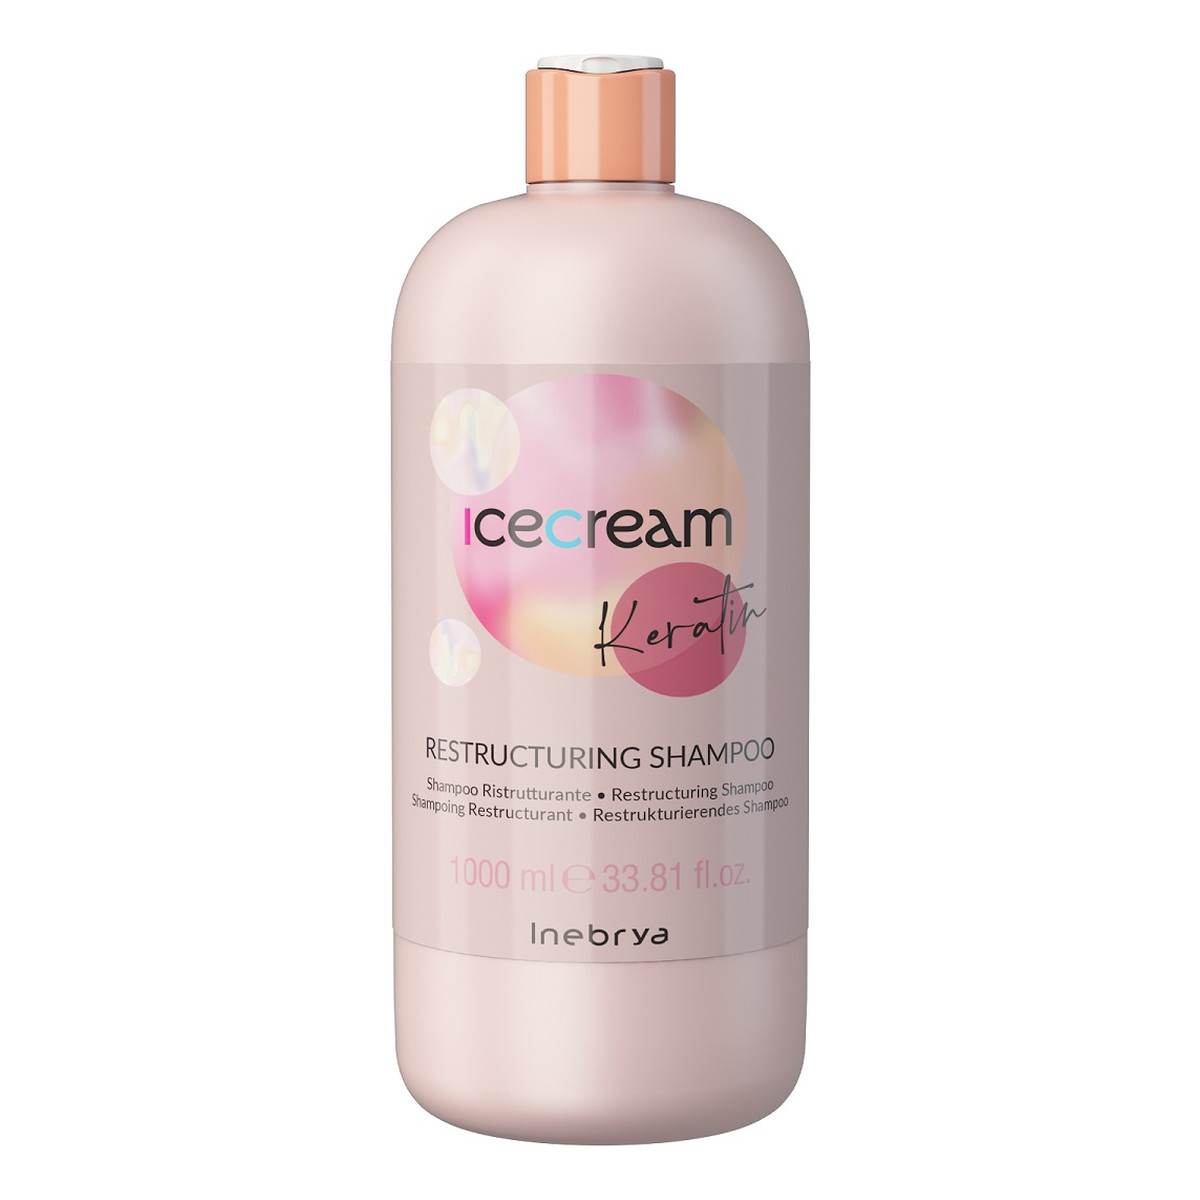 Inebrya Keratin restructuring shampoo restrukturyzujący szampon do włosów 1000ml